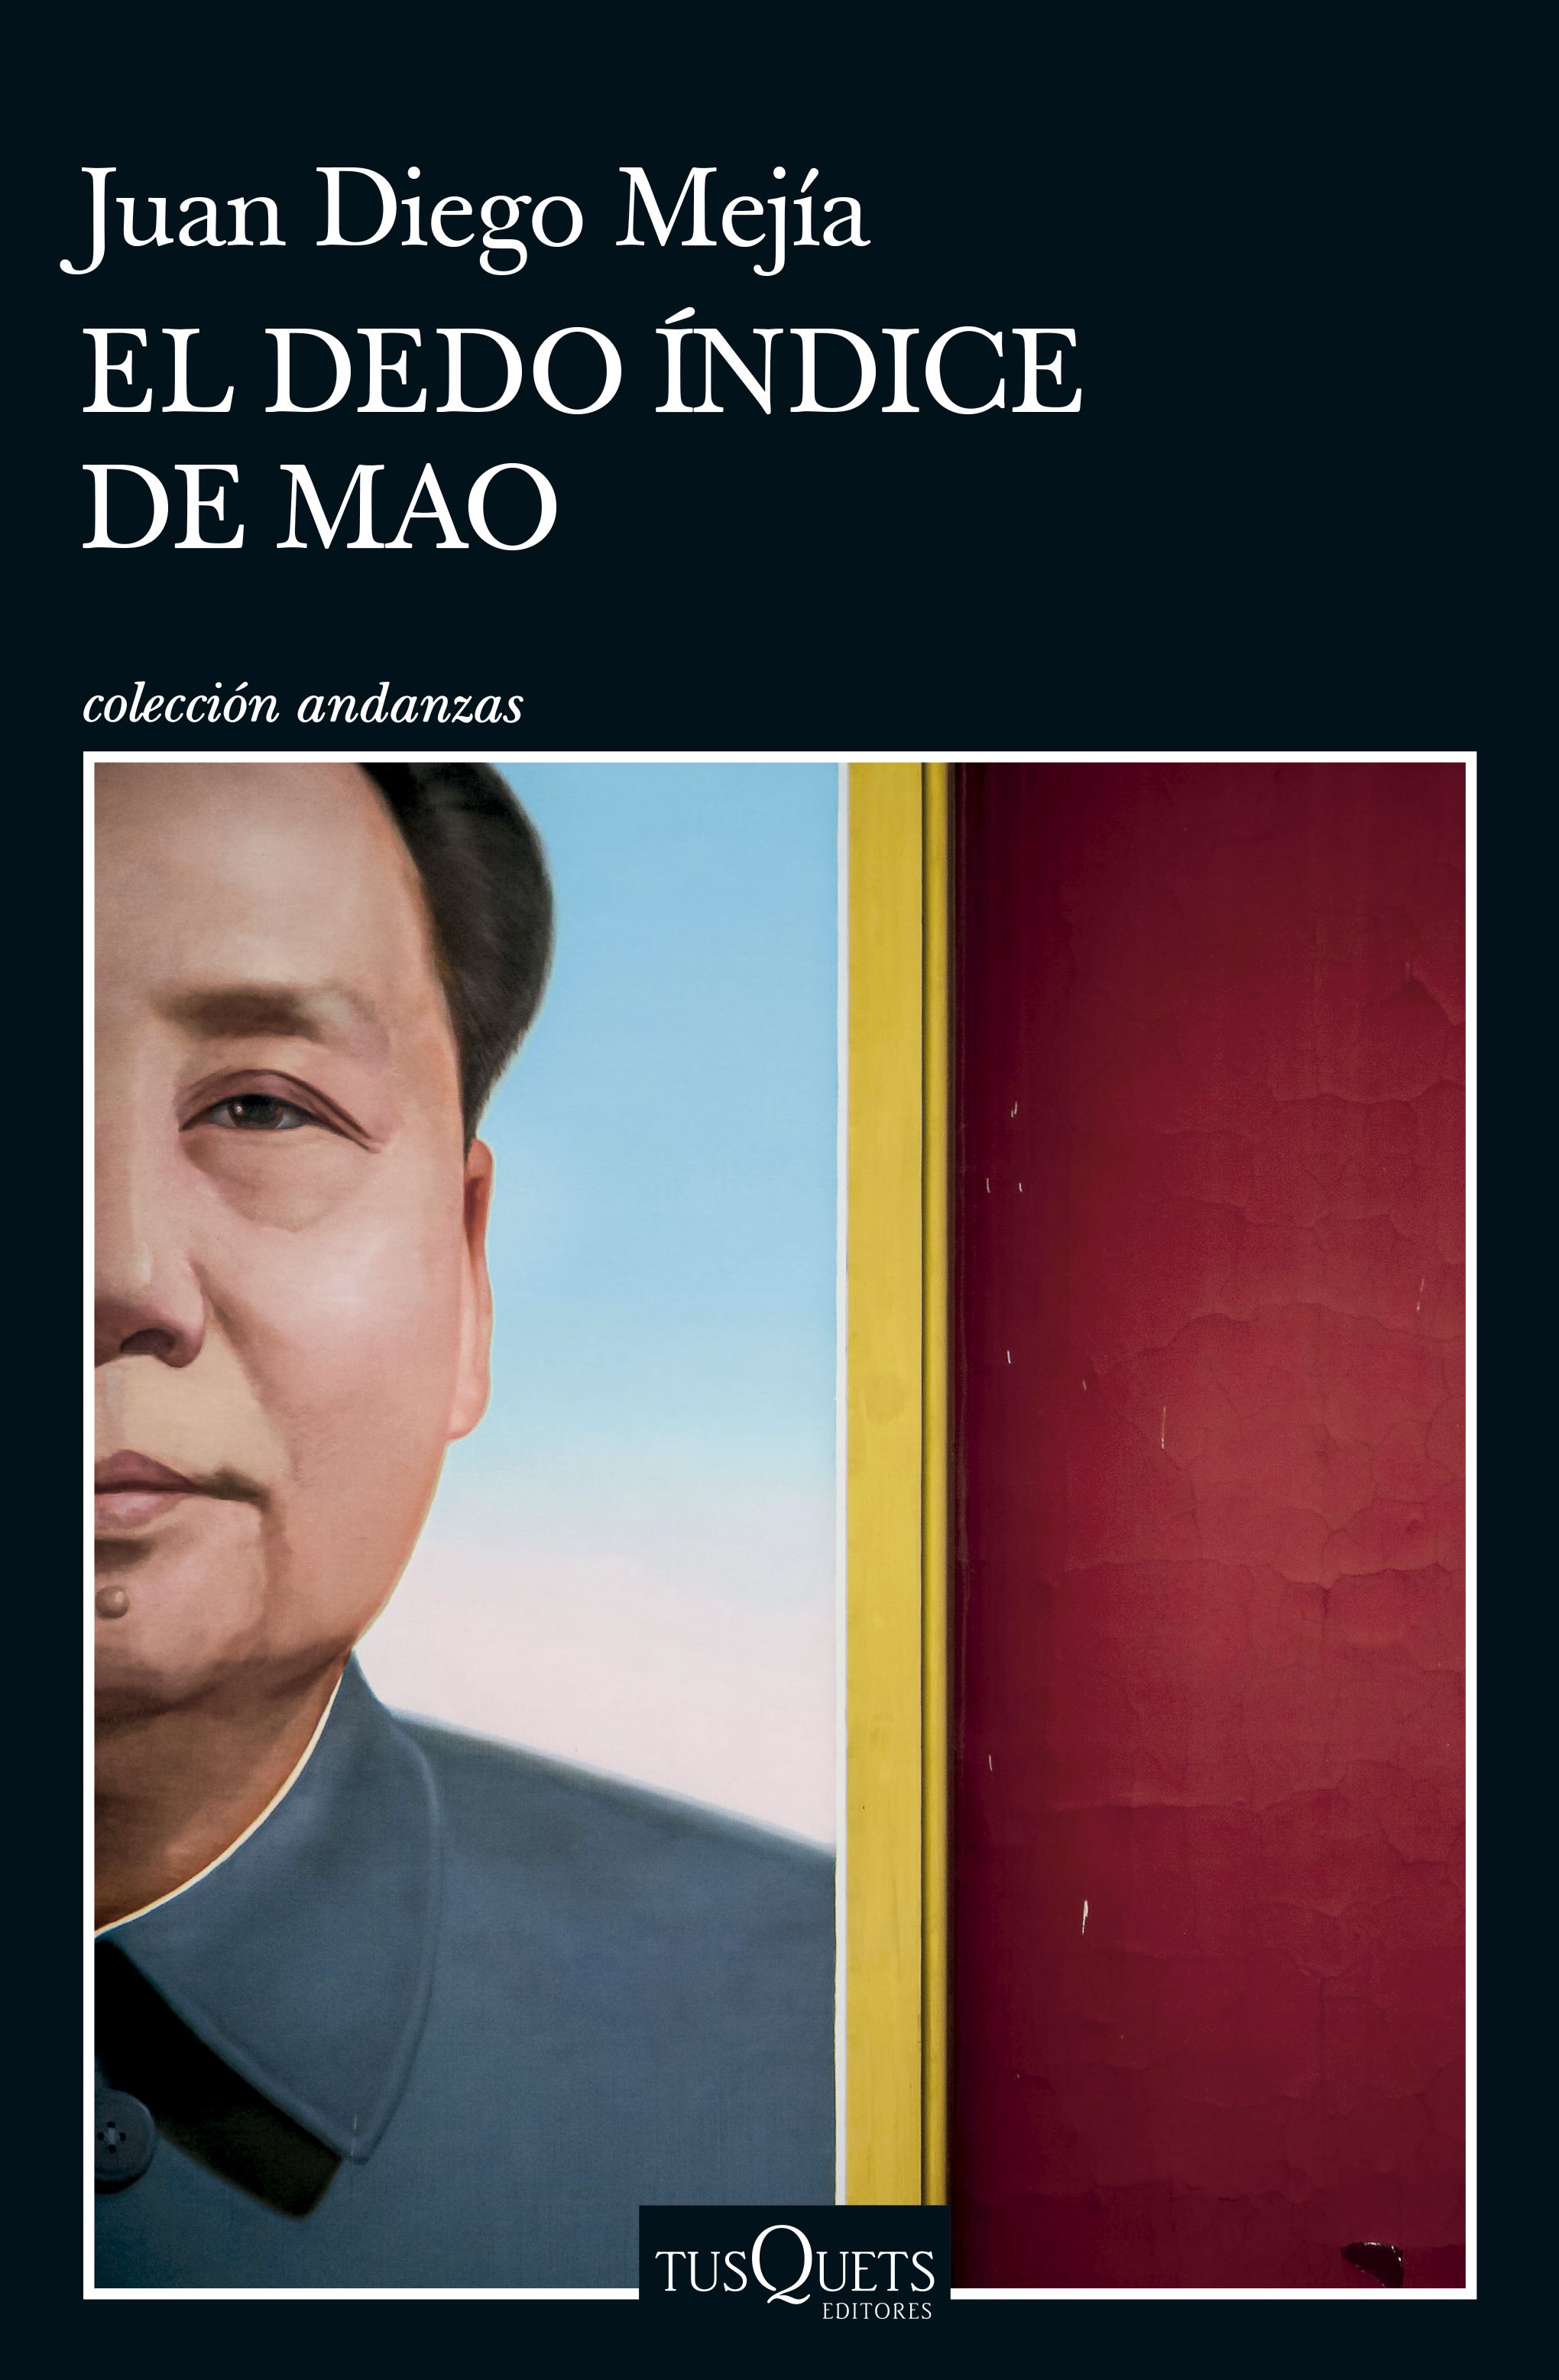 Portada del libro "El dedo índice de Mao", de Juan Diego Mejía. (Cortesía: Planeta de Libros).